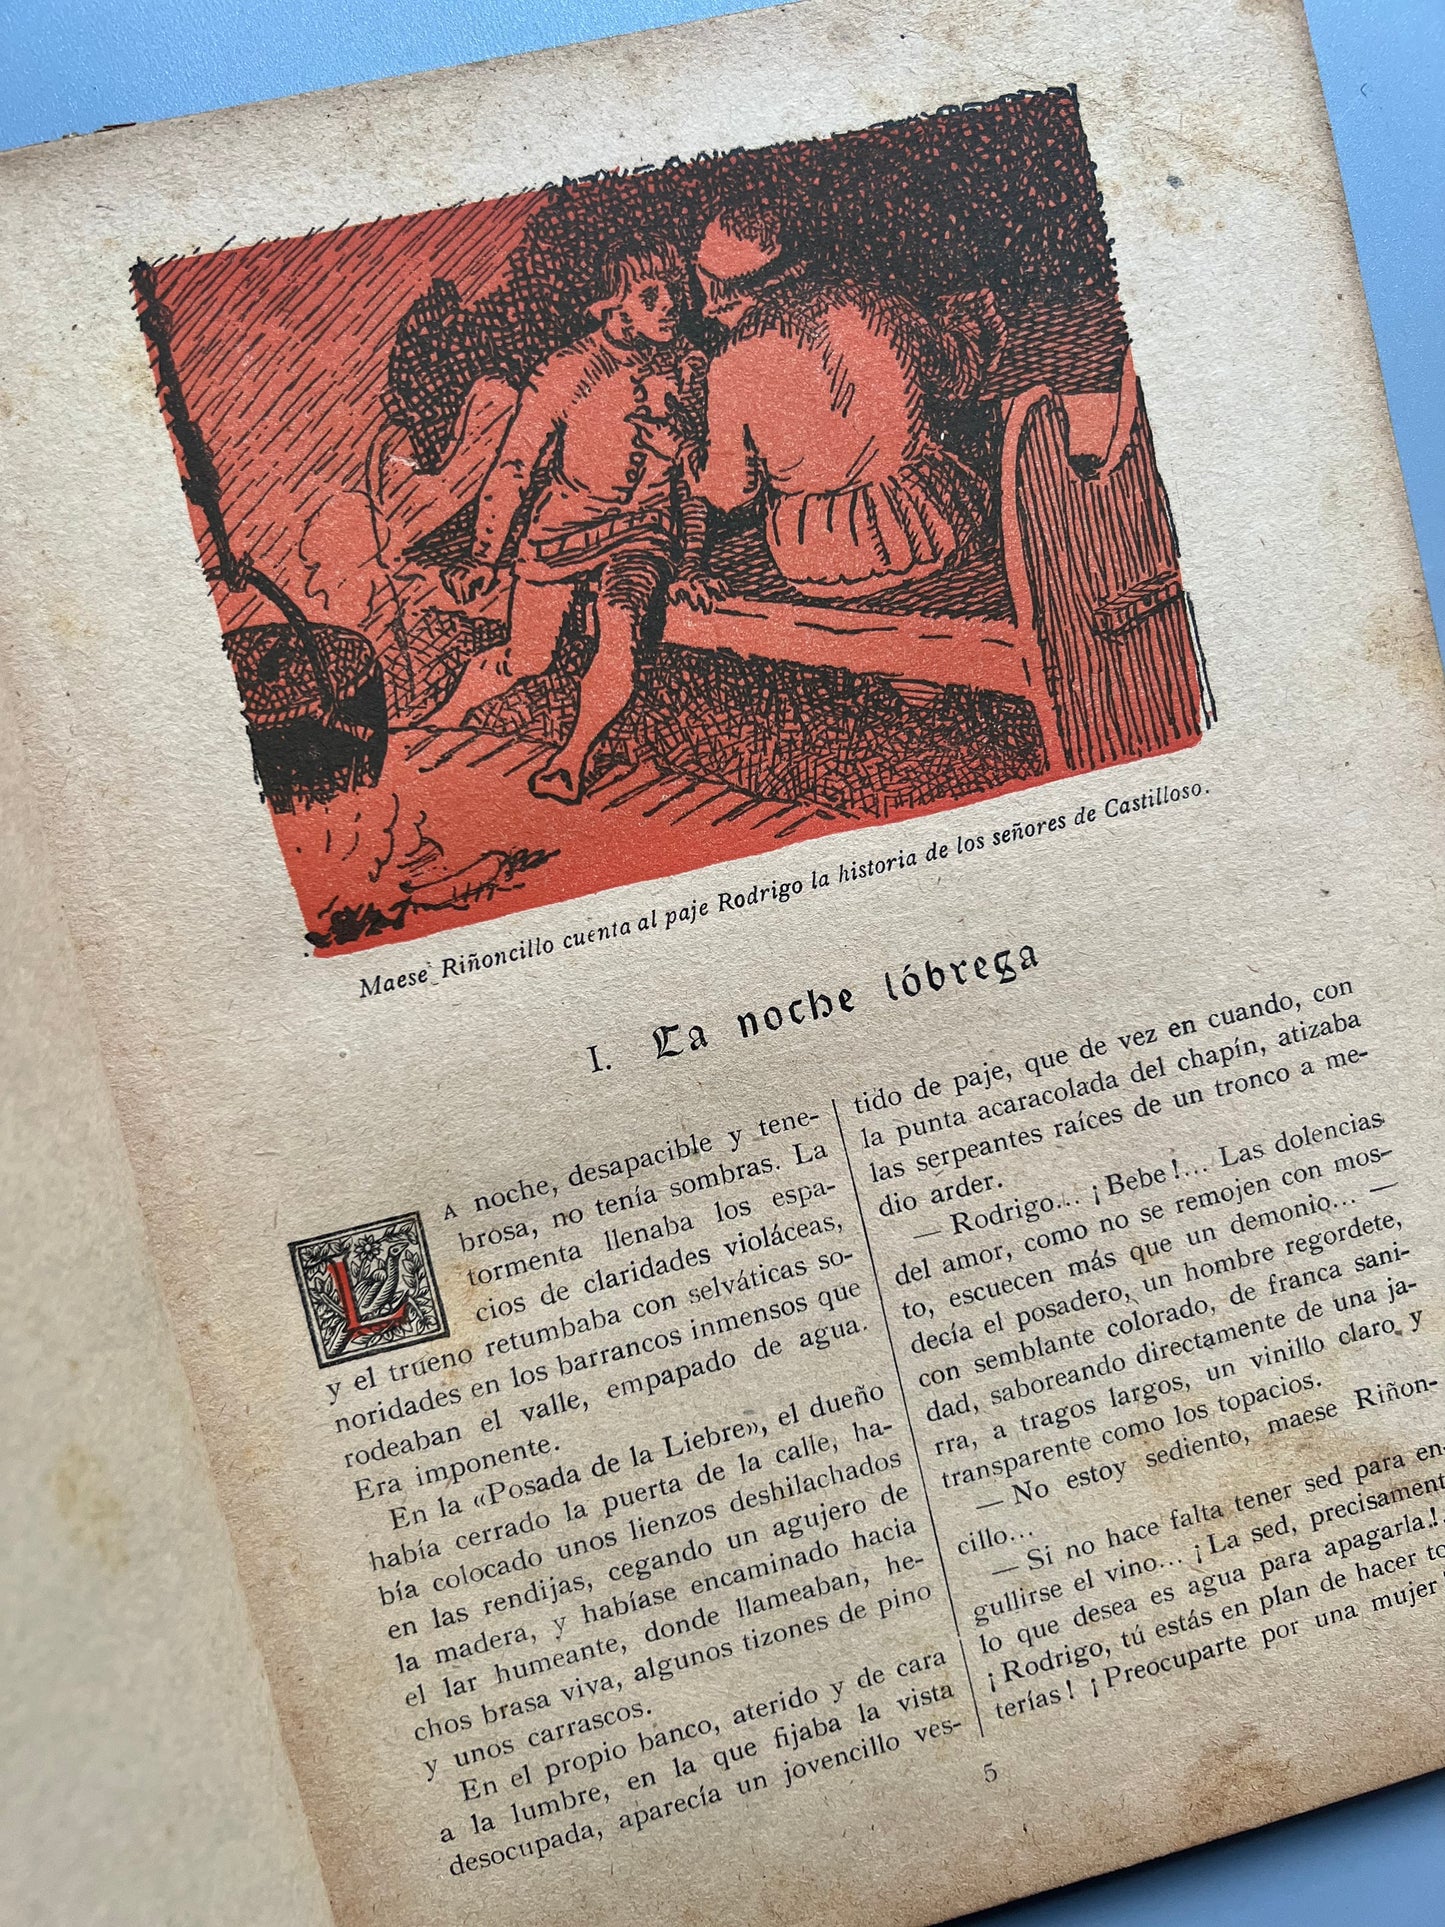 El caballero de la cruz, Clovis Eimeric - Ediciones Aymá, ca. 1930